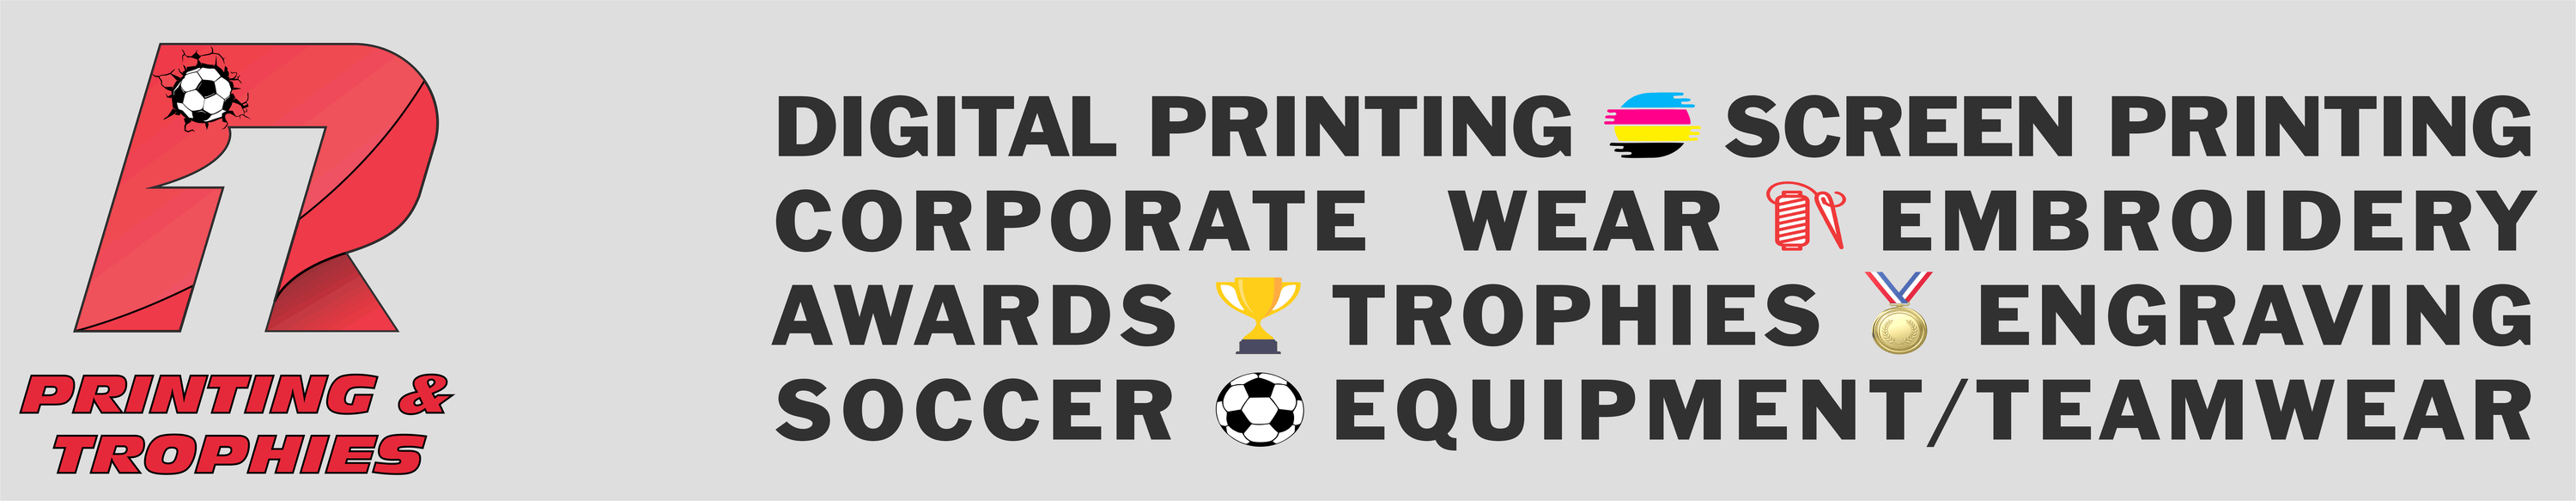 R1 Printing & Trophies